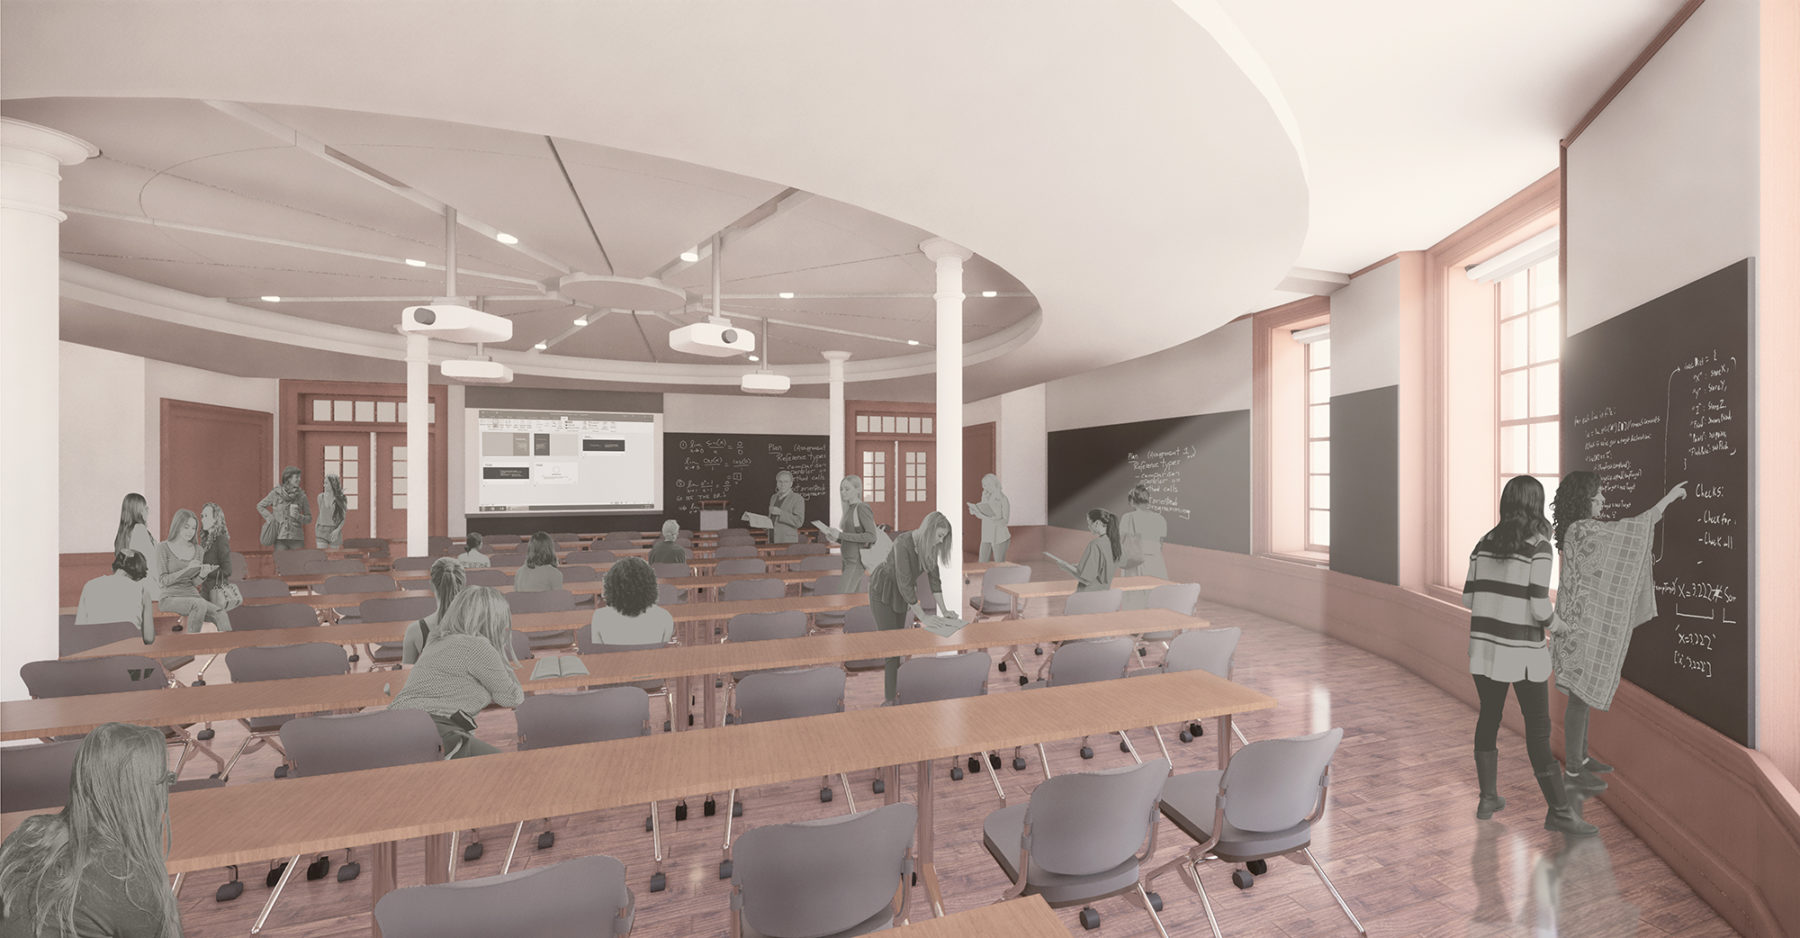 rendering of classroom